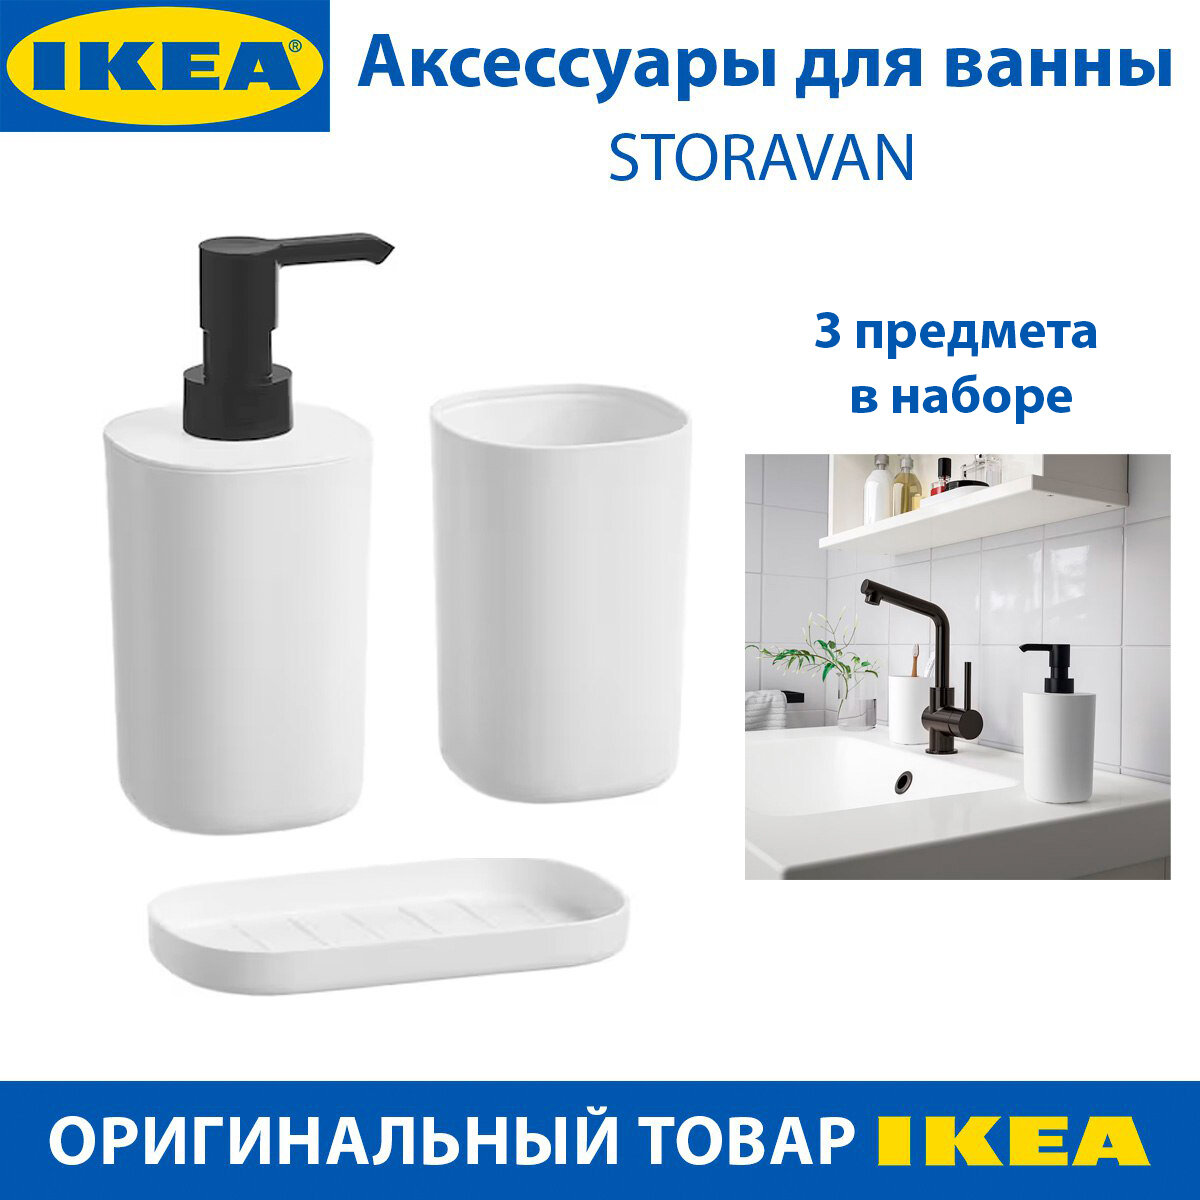 Аксессуары для ванны IKEA STORAVAN (стораван), цвет белый, 3 предмета в наборе